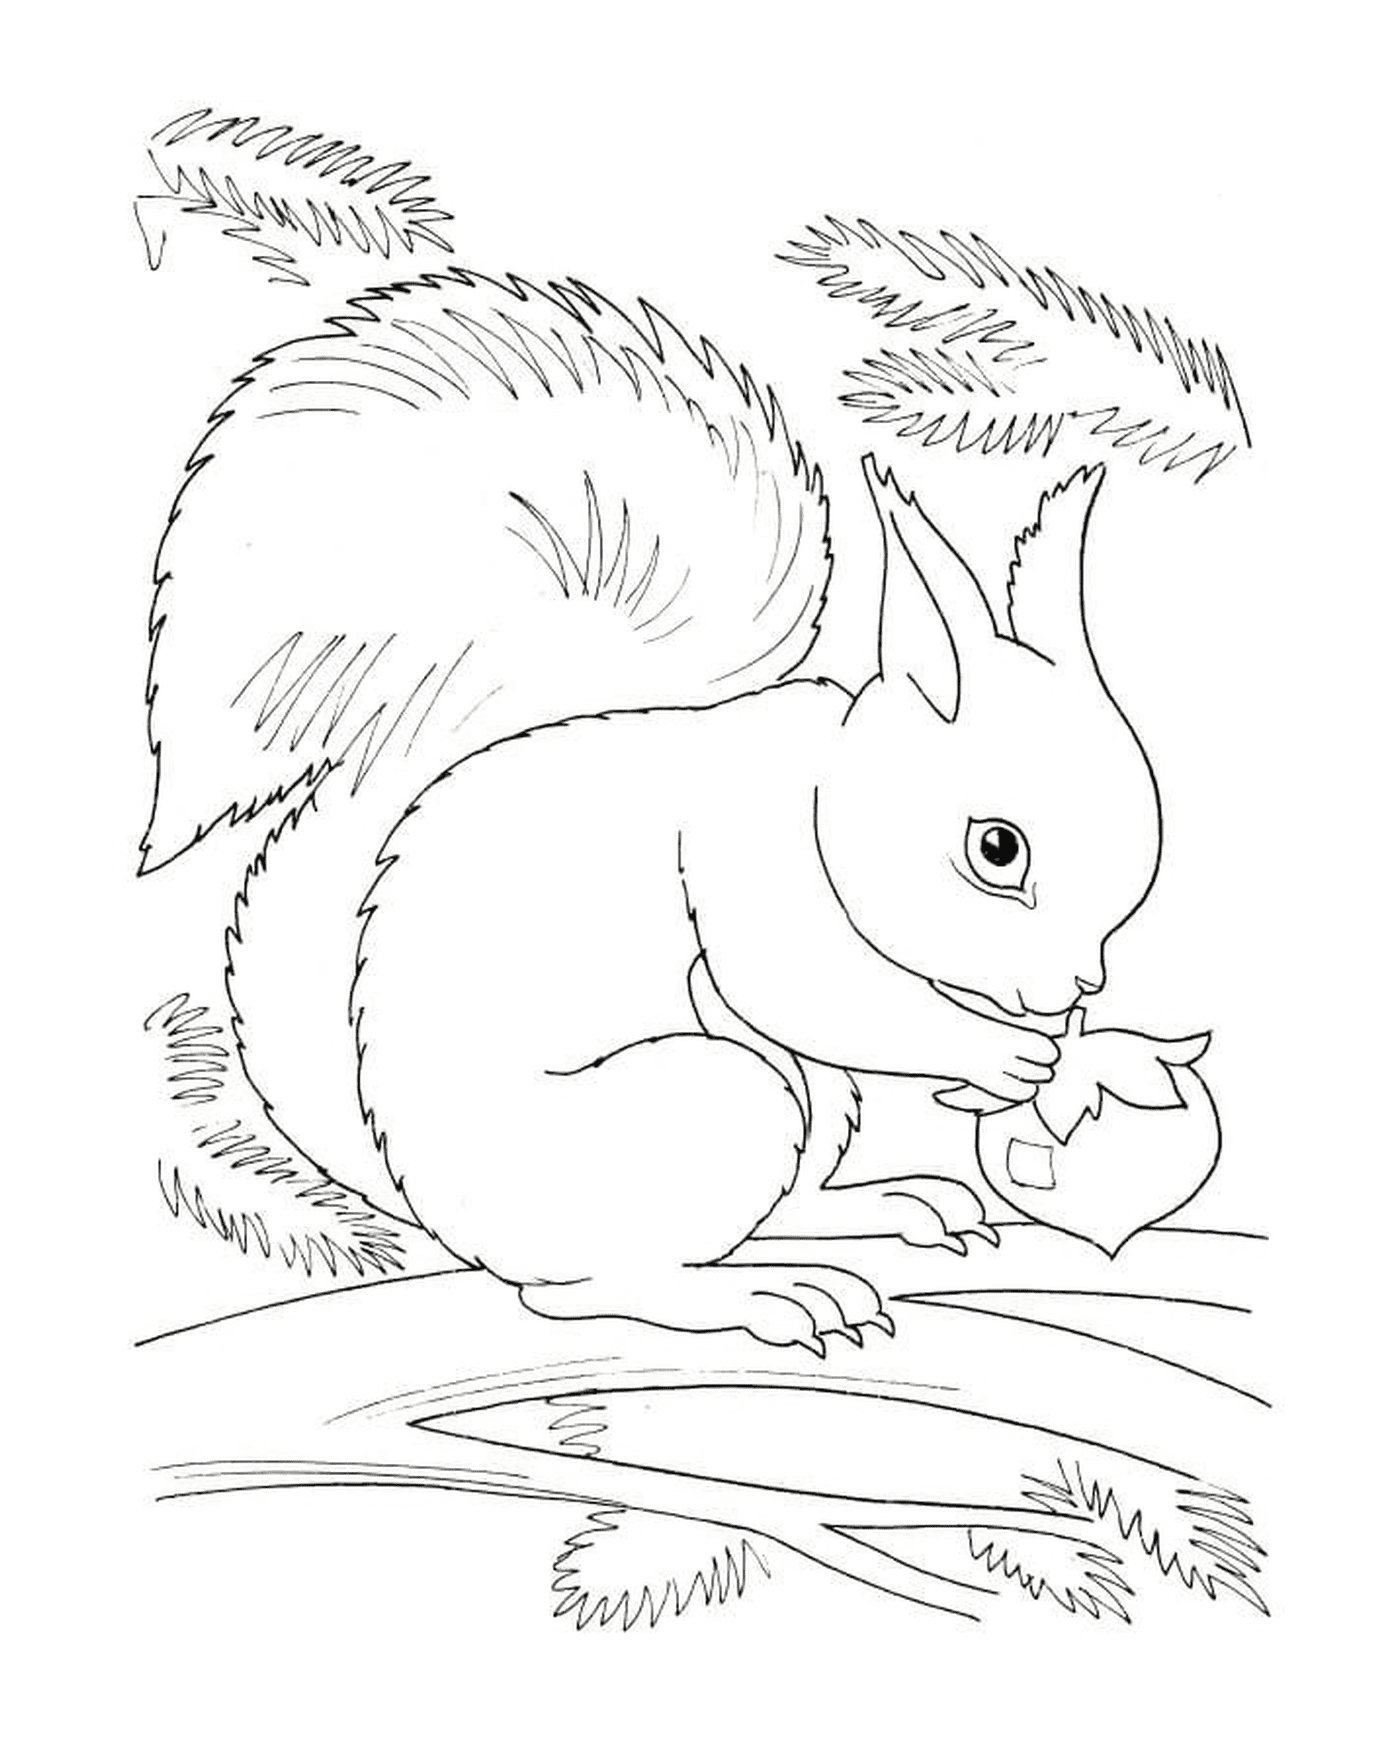  A squirrel eating a hazelnut 